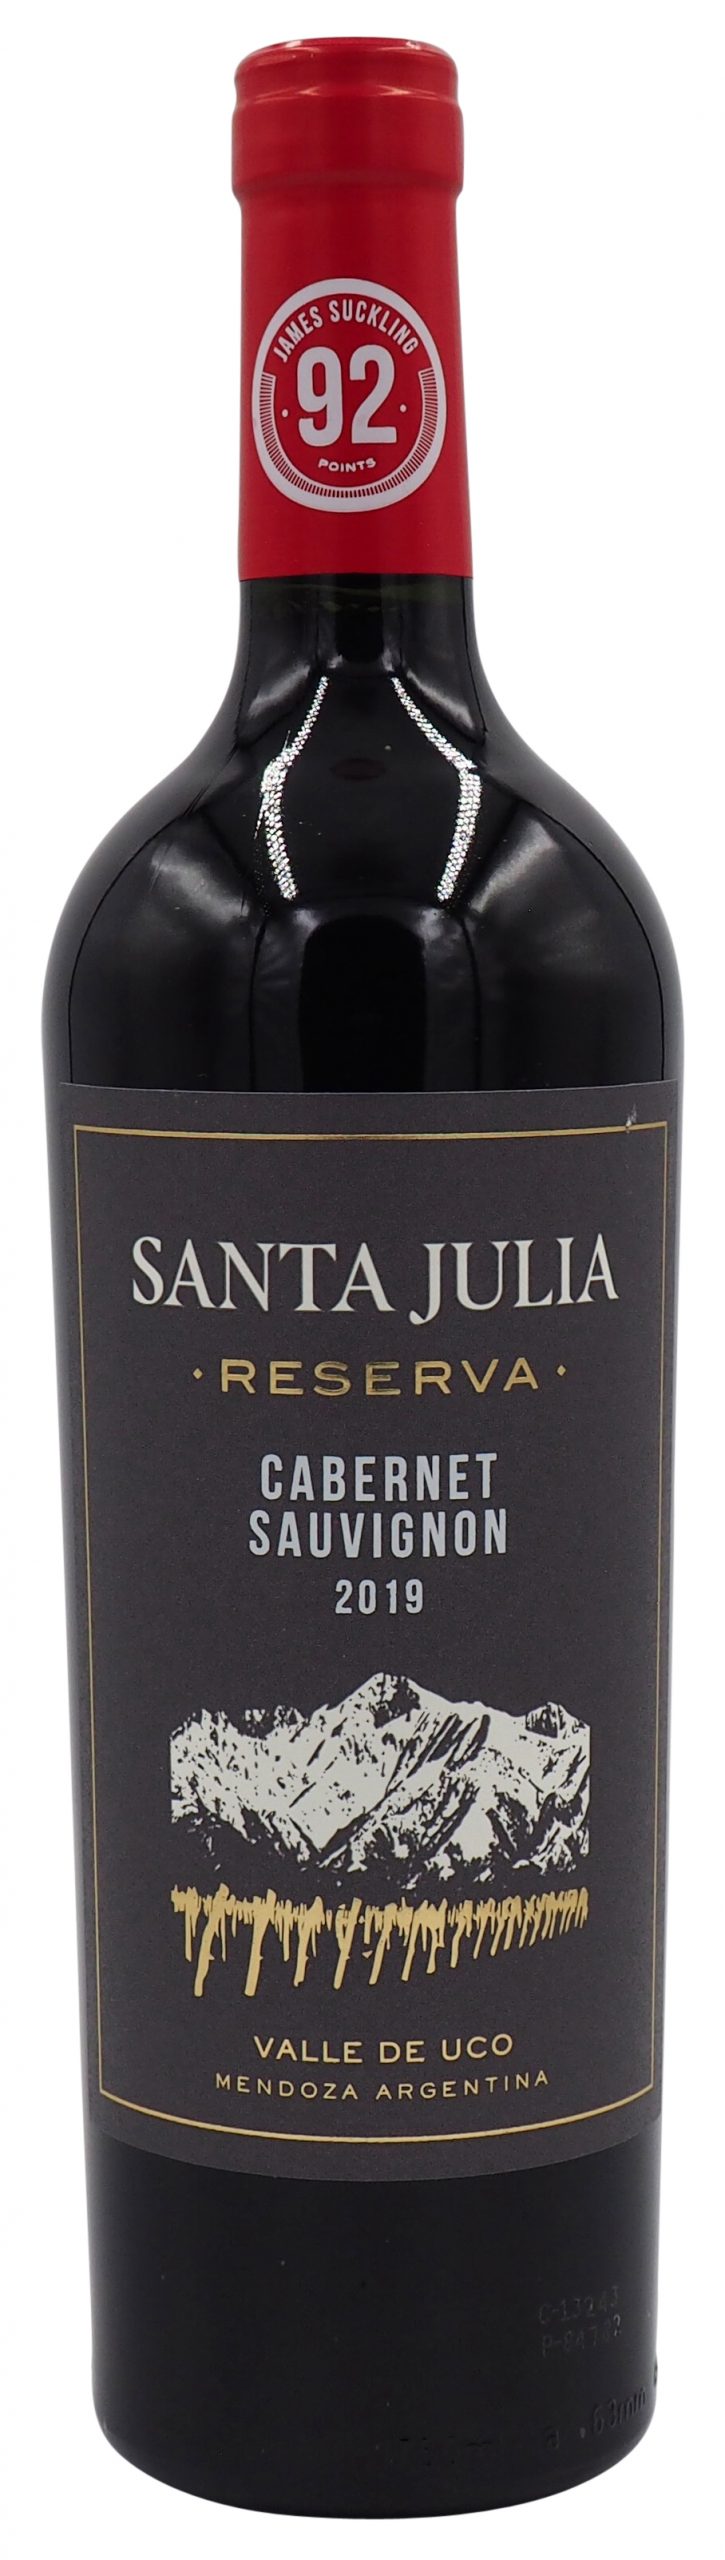 Santa Julia ‘Reserva’ Cabernet Sauvignon 2019